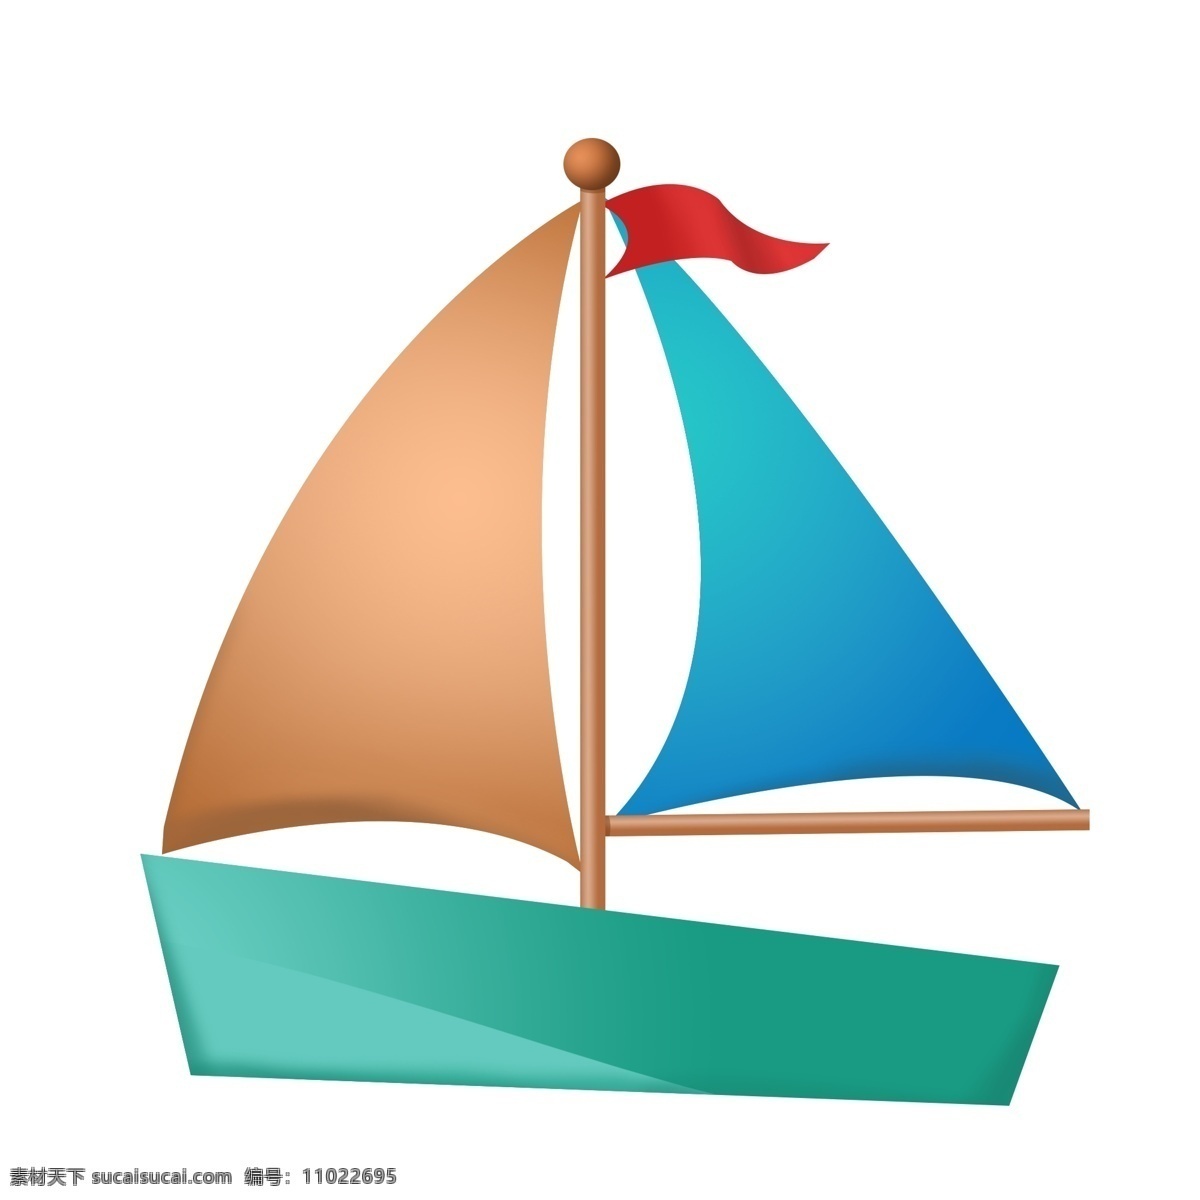 可爱 卡通 手绘 帆船 平面 一帆风顺 吉祥 祝福 碧海 蓝天 乘船 船帆 水上设施 交通工具 旗子